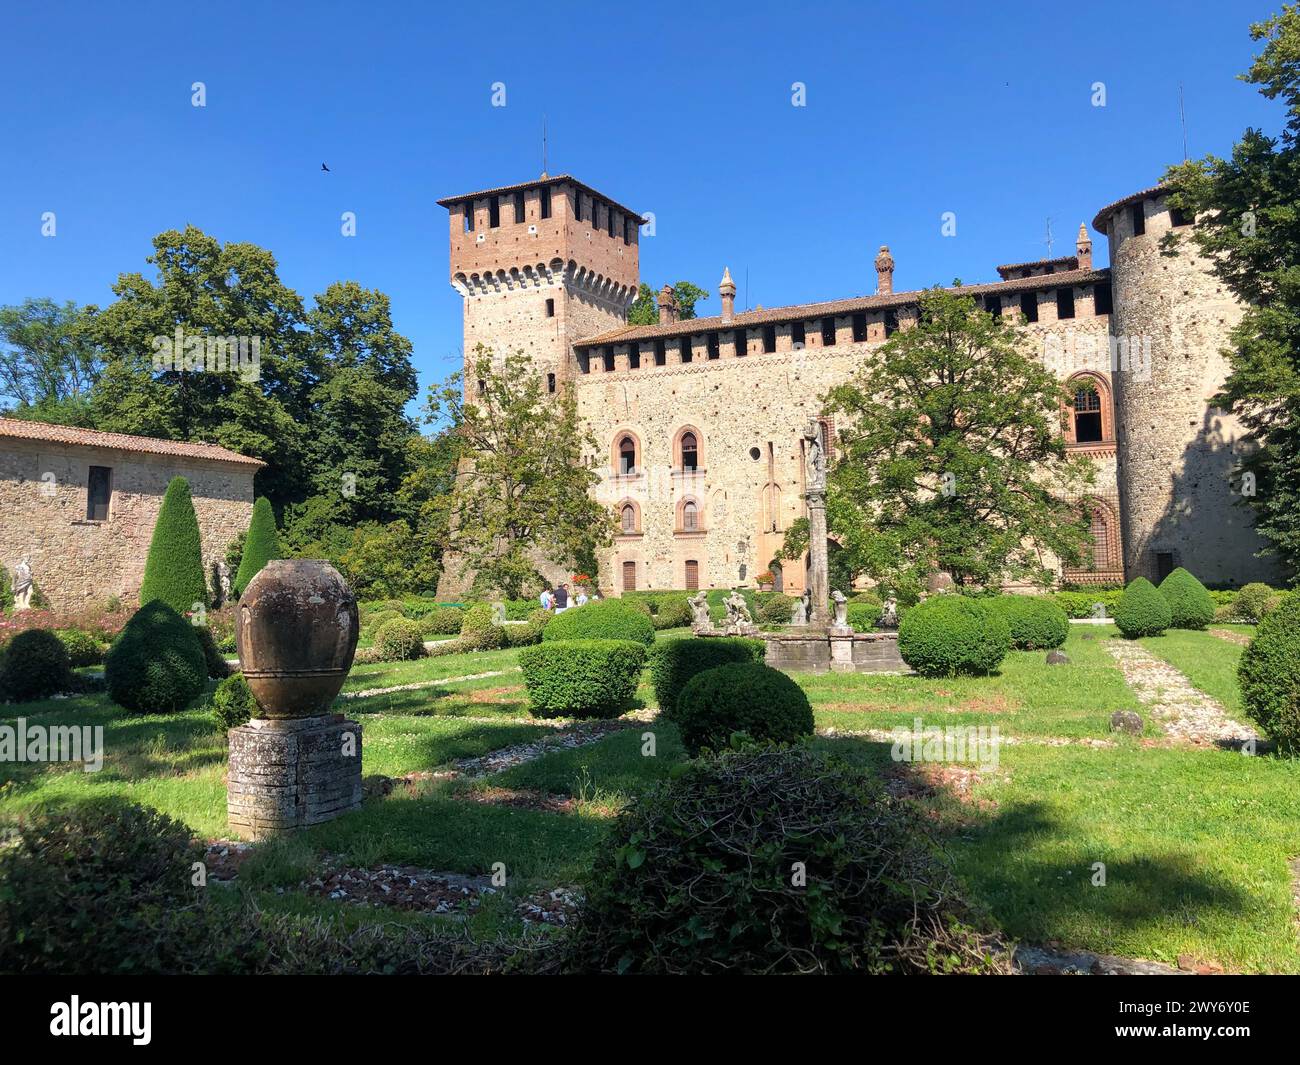 Grazzano Visconti, italy - june 11, 2023: tourists visiting medieval village and castle of Grazzano Visconti in Piacenza province Stock Photo